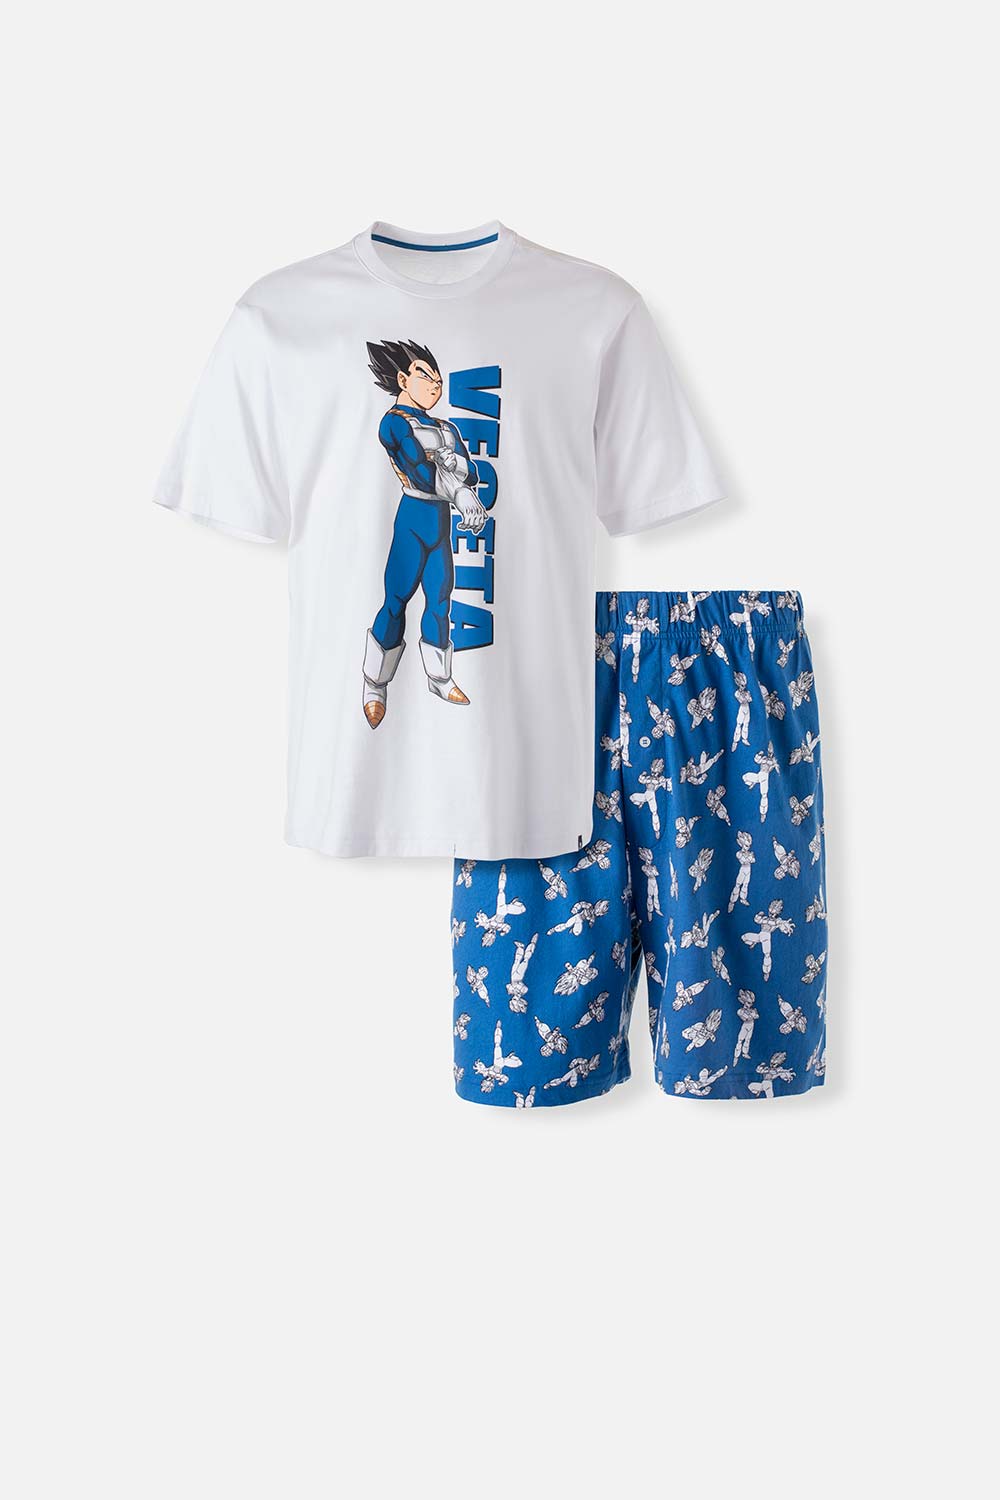 Pijama de Vegeta azul y blanca de pantalón corto para hombre S-0